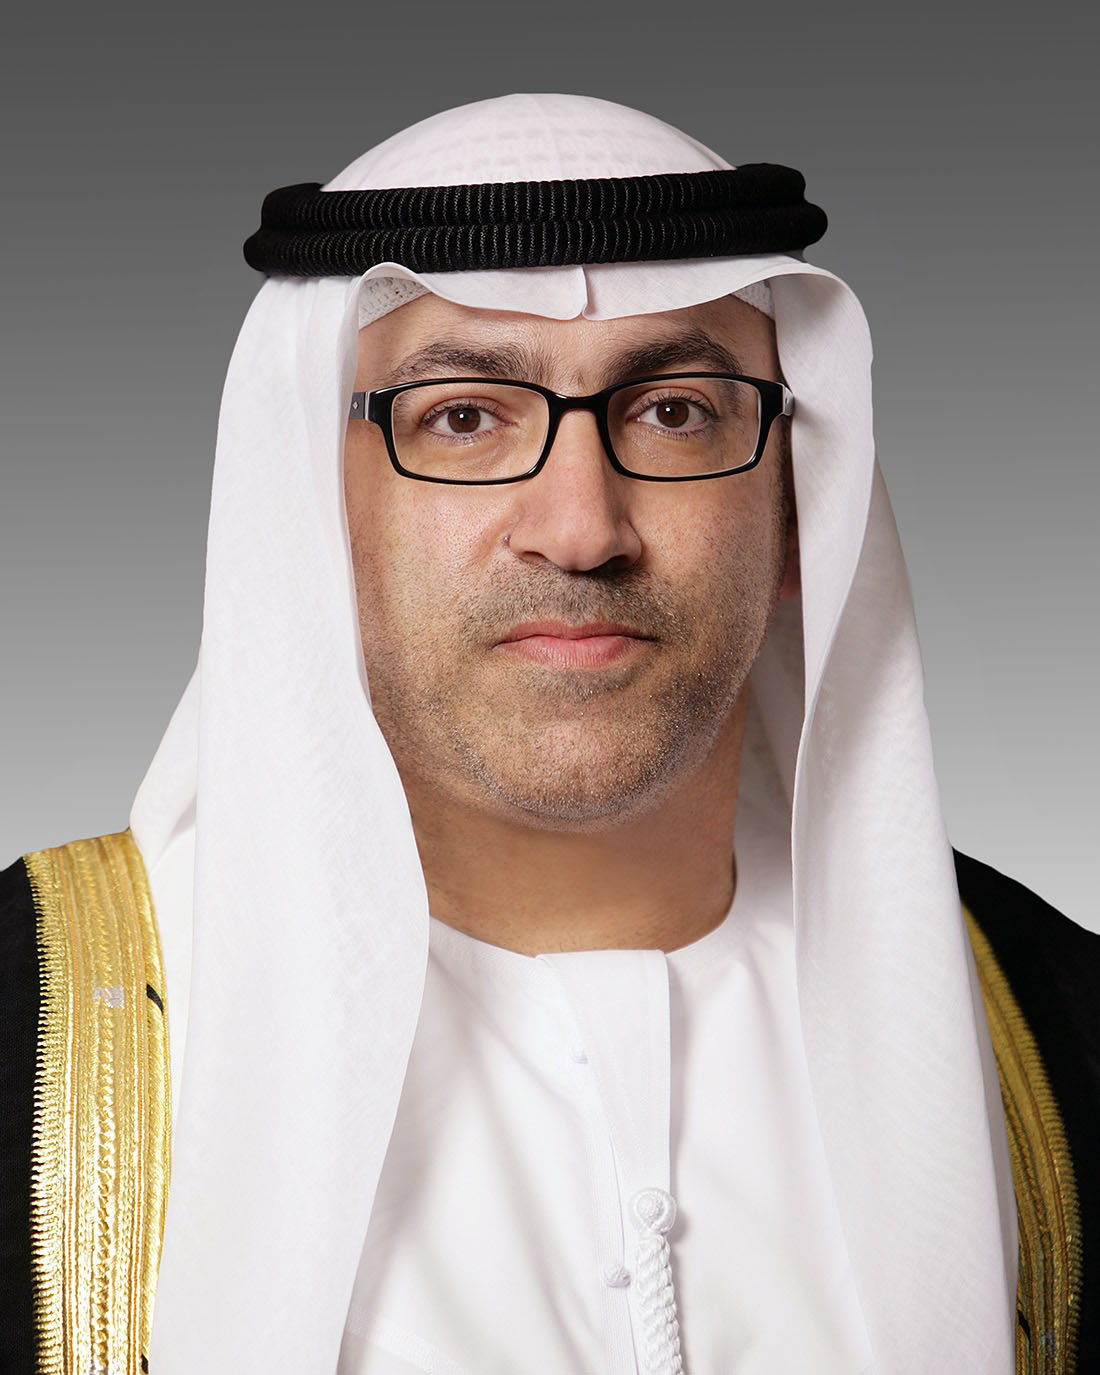 H.E.-AbdulRahman-bin-Mohammed-Al-Owais-Minister-of-Health-and-Prevention.jpg